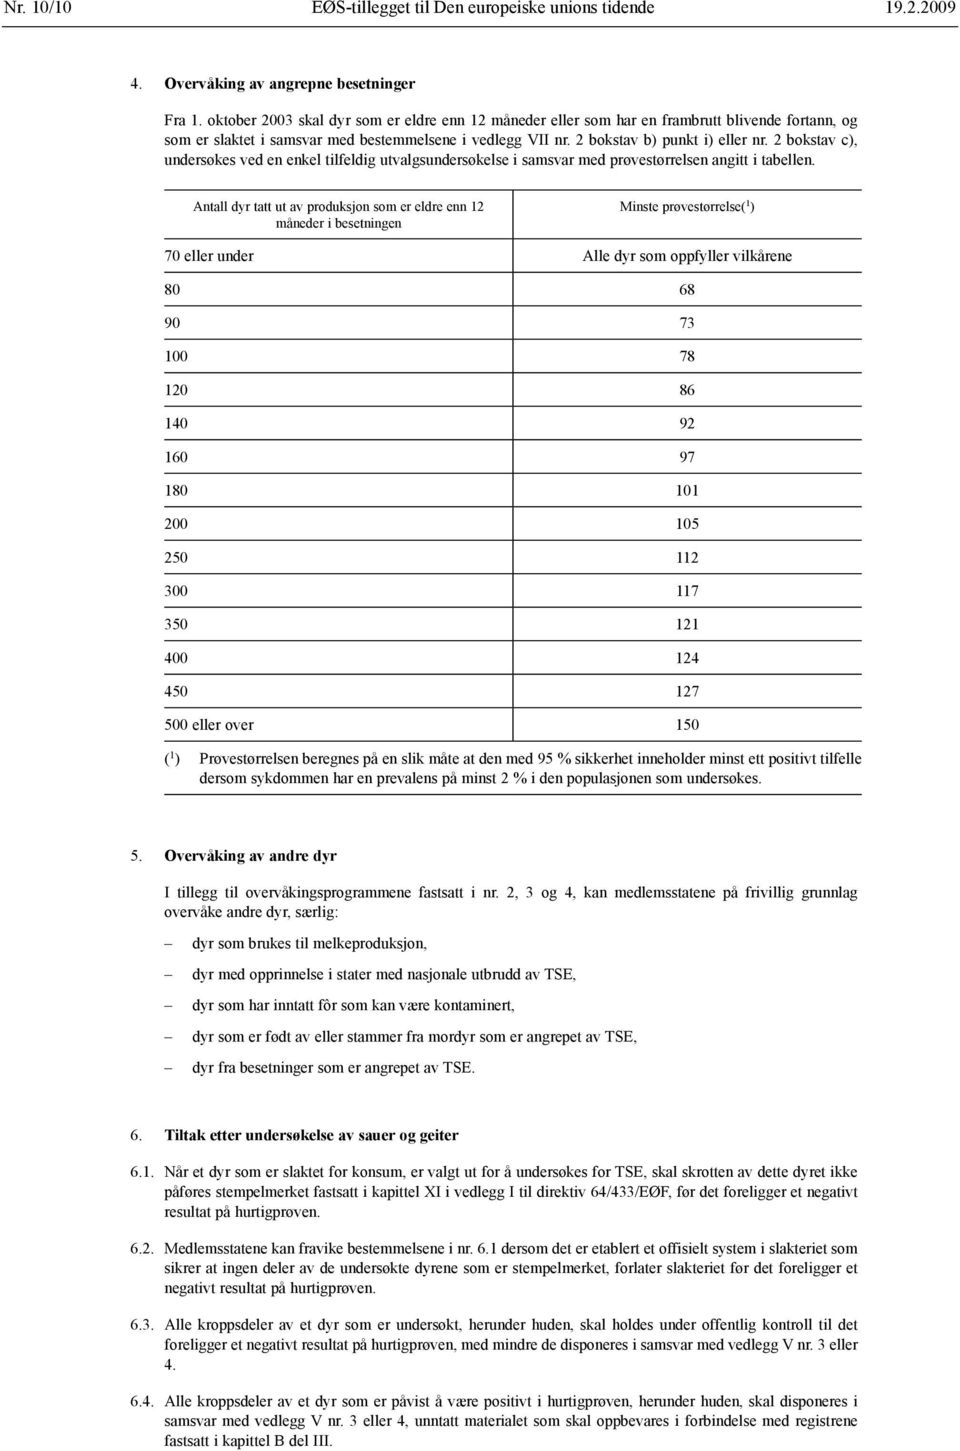 2 bokstav c), undersøkes ved en enkel tilfeldig utvalgsundersøkelse i samsvar med prøvestørrelsen angitt i tabellen.